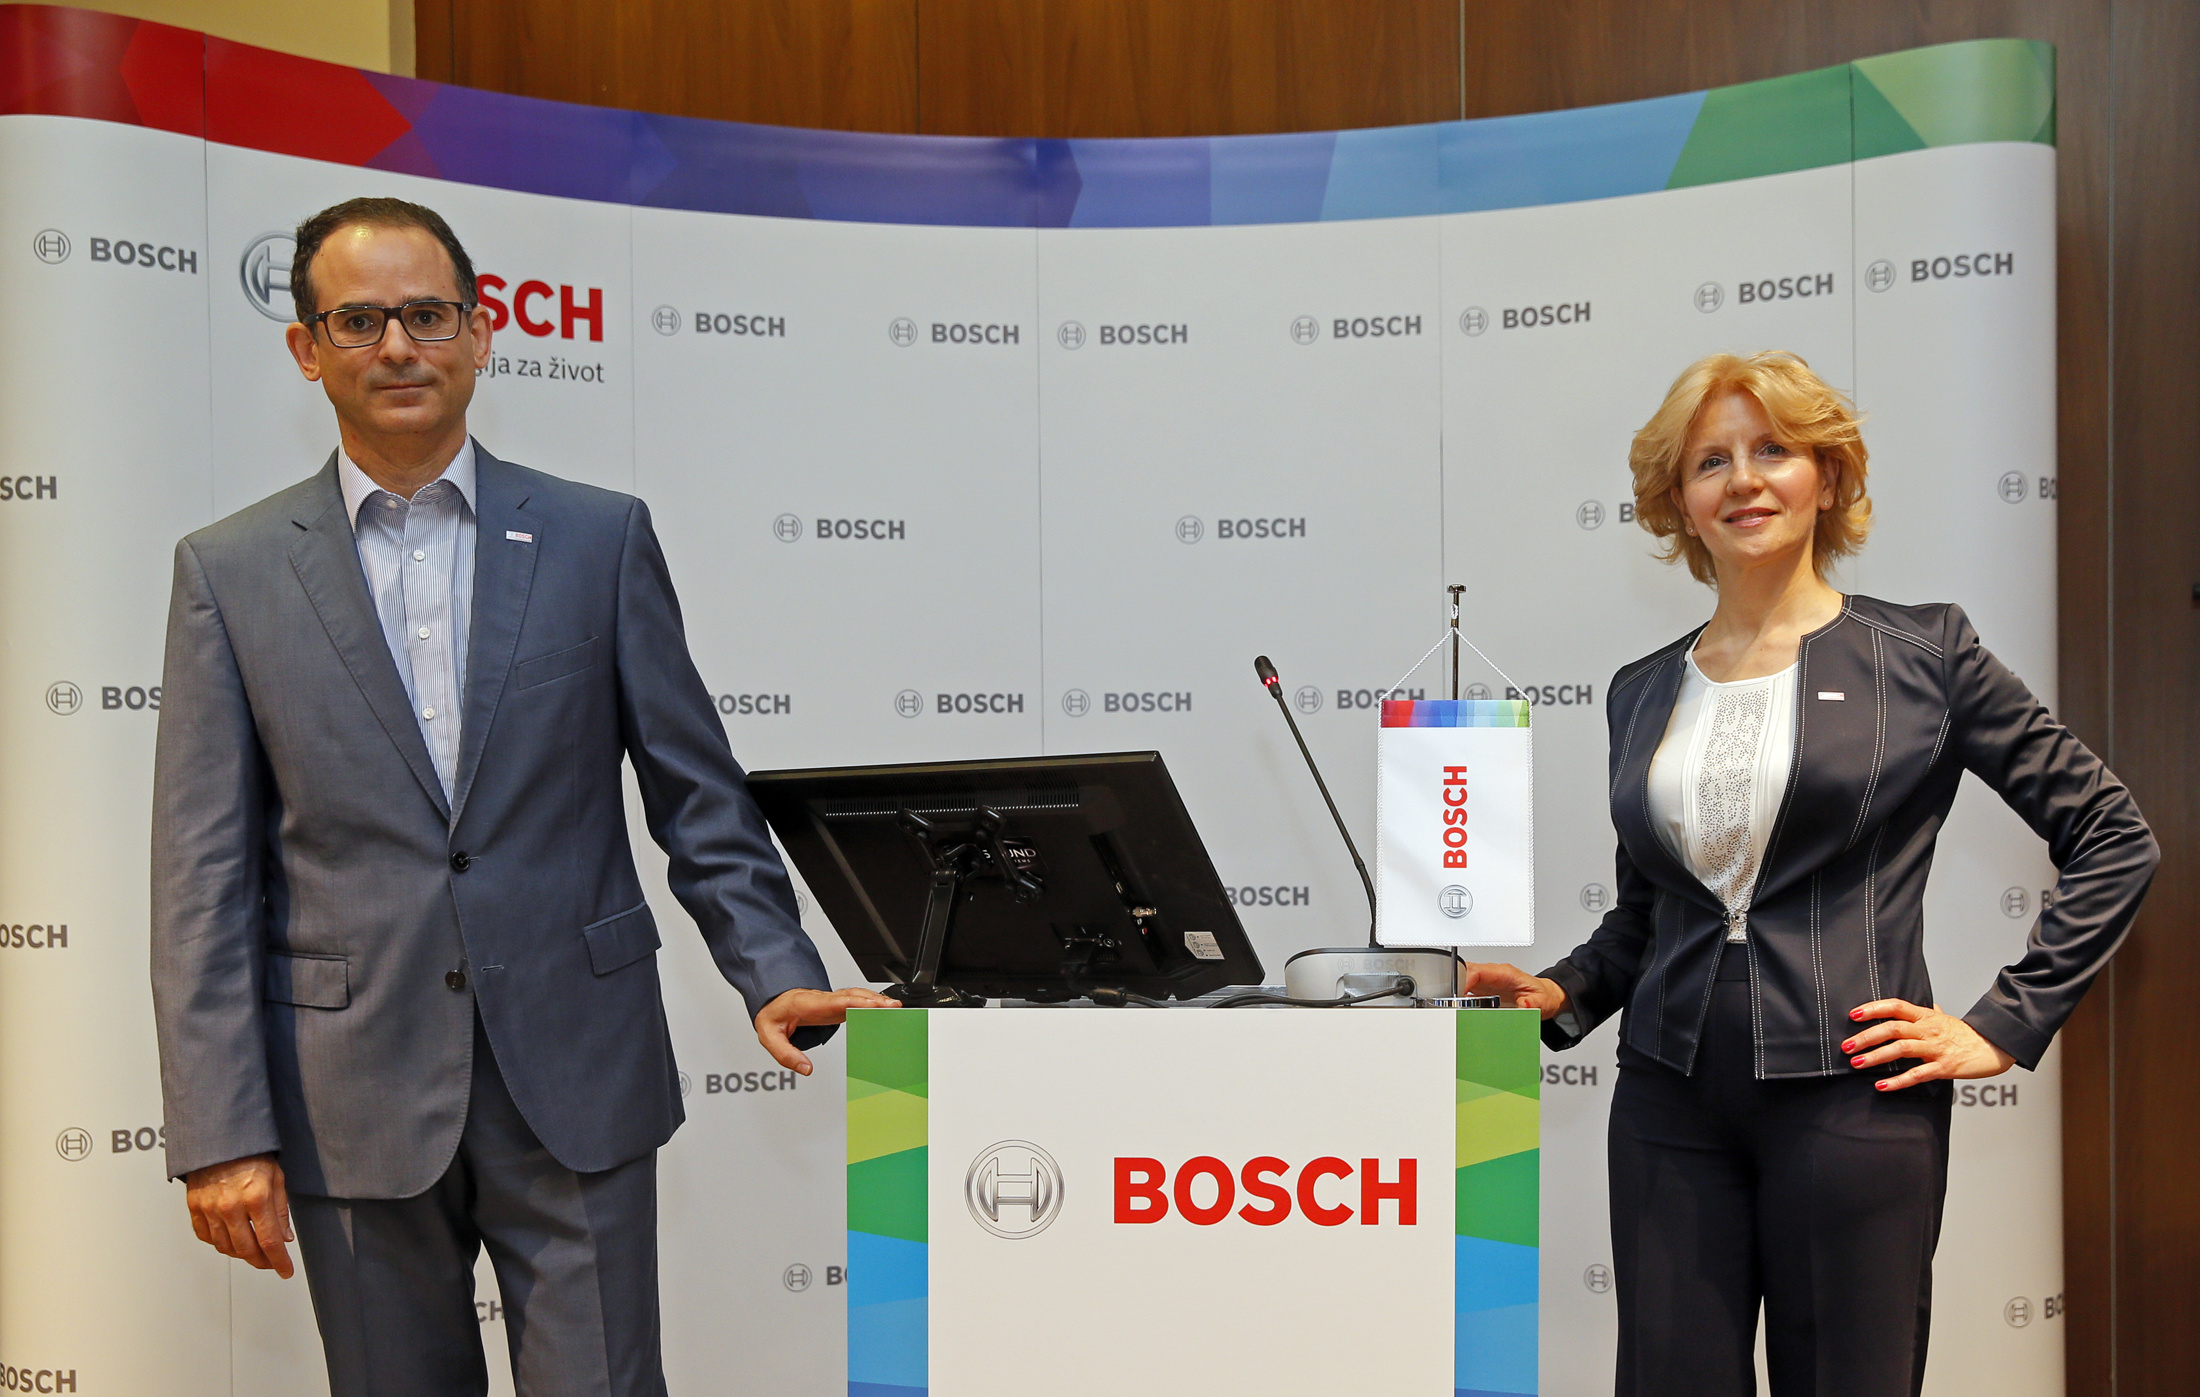 Godišnja press konferencija u Beogradu 2016. – Bosch beleži snažan rast u Srbiji u 2015. godini